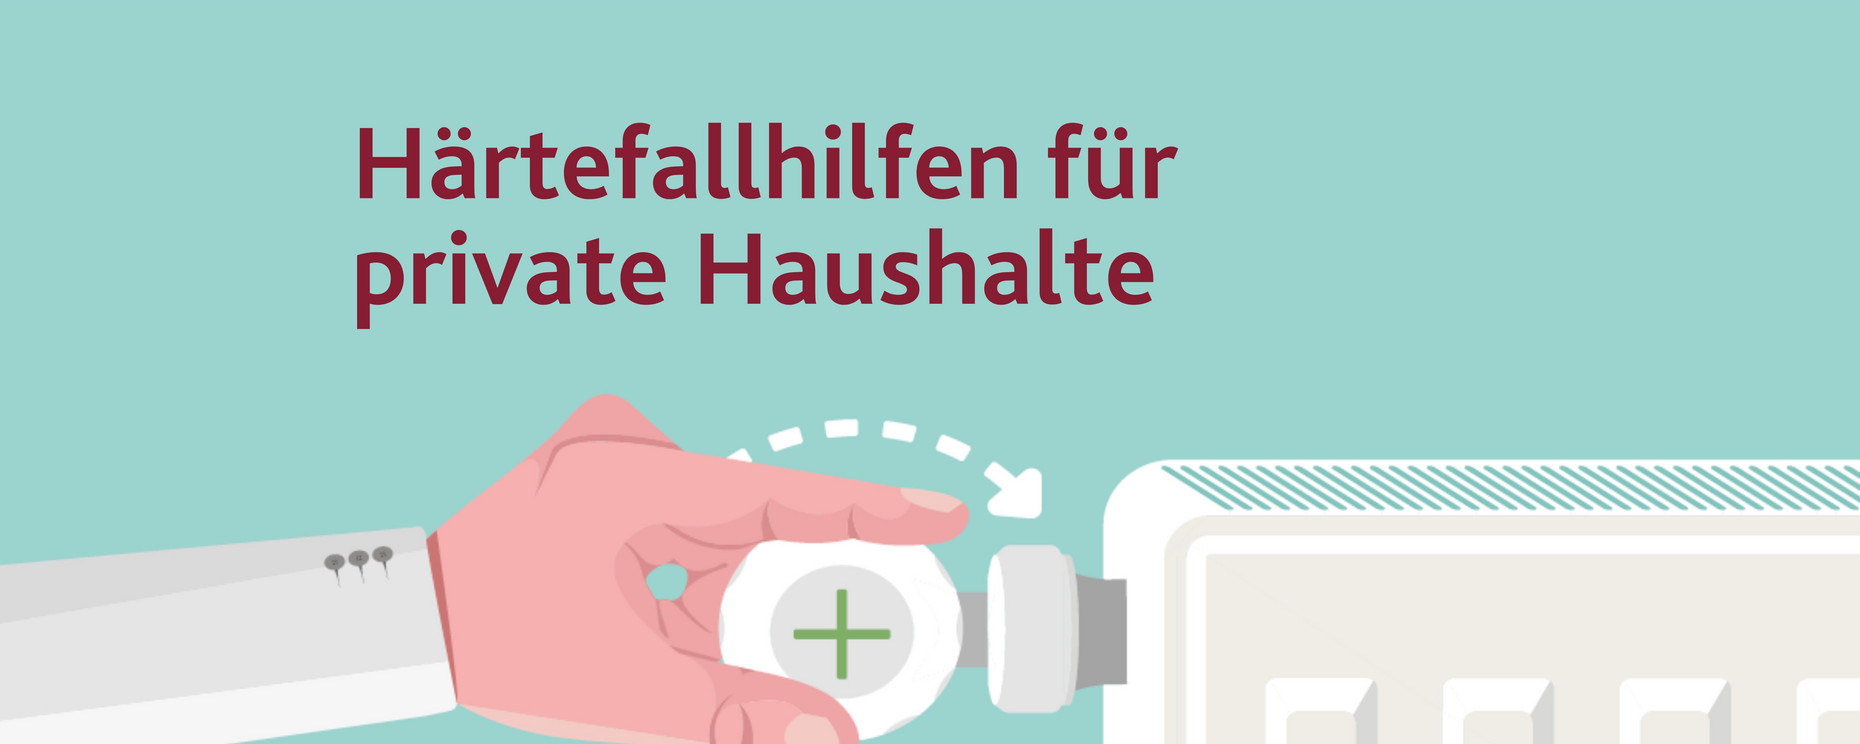 Illustration mit Heizkörper und Hand, die den Temperaturregler hält sowie Text "Härtefallhilfen für private Haushalte heizkostenhilfe.rlp.de".